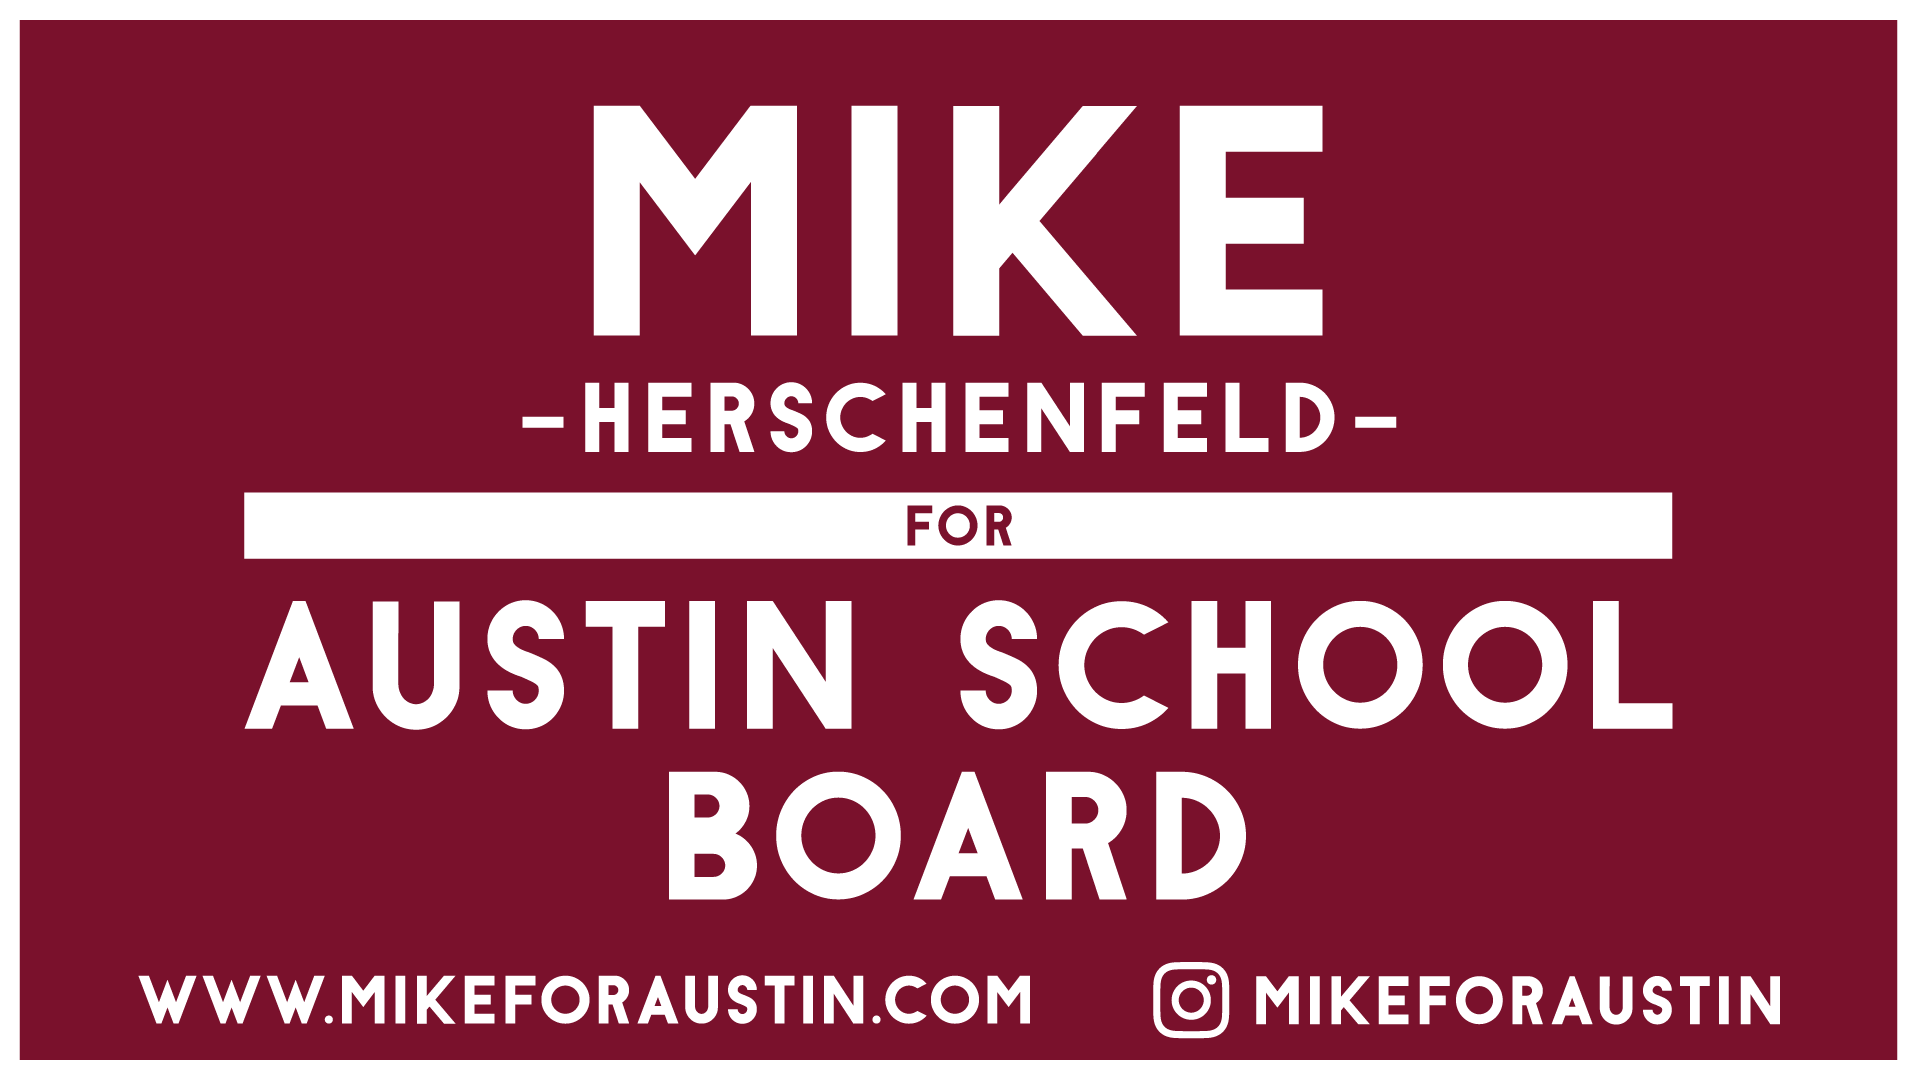 Mike for Austin School Board logo